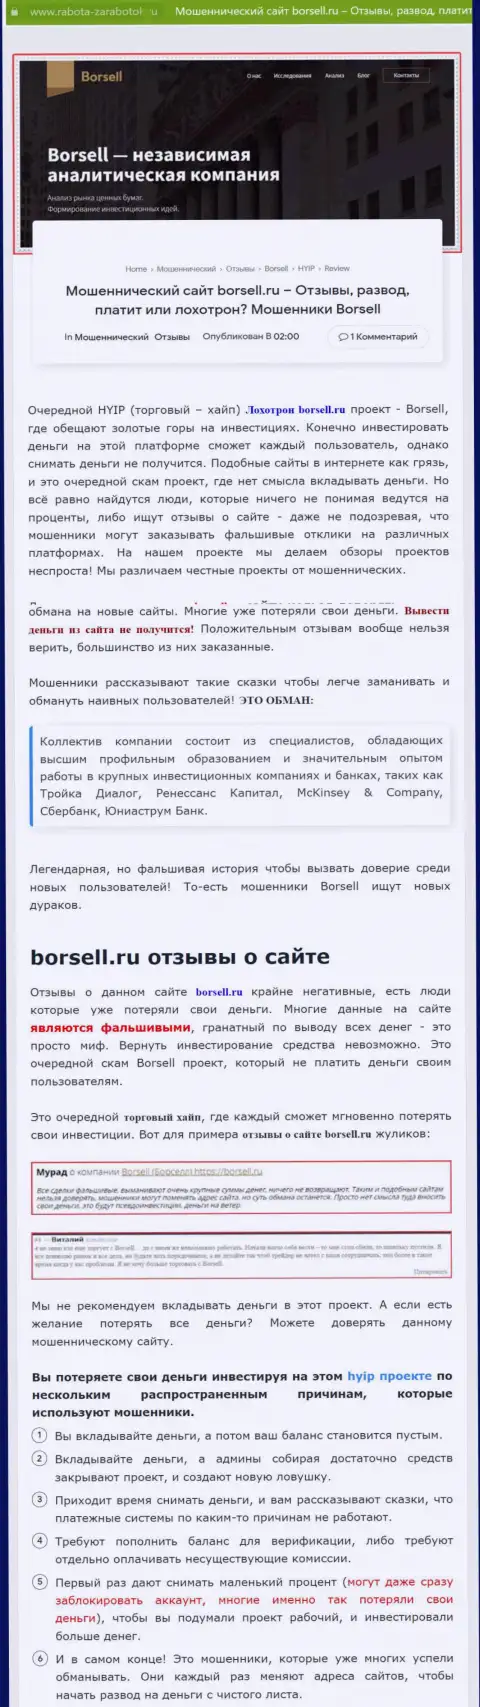 Детально просмотрите предложения работы Borsell Ru, в организации лохотронят (обзор)